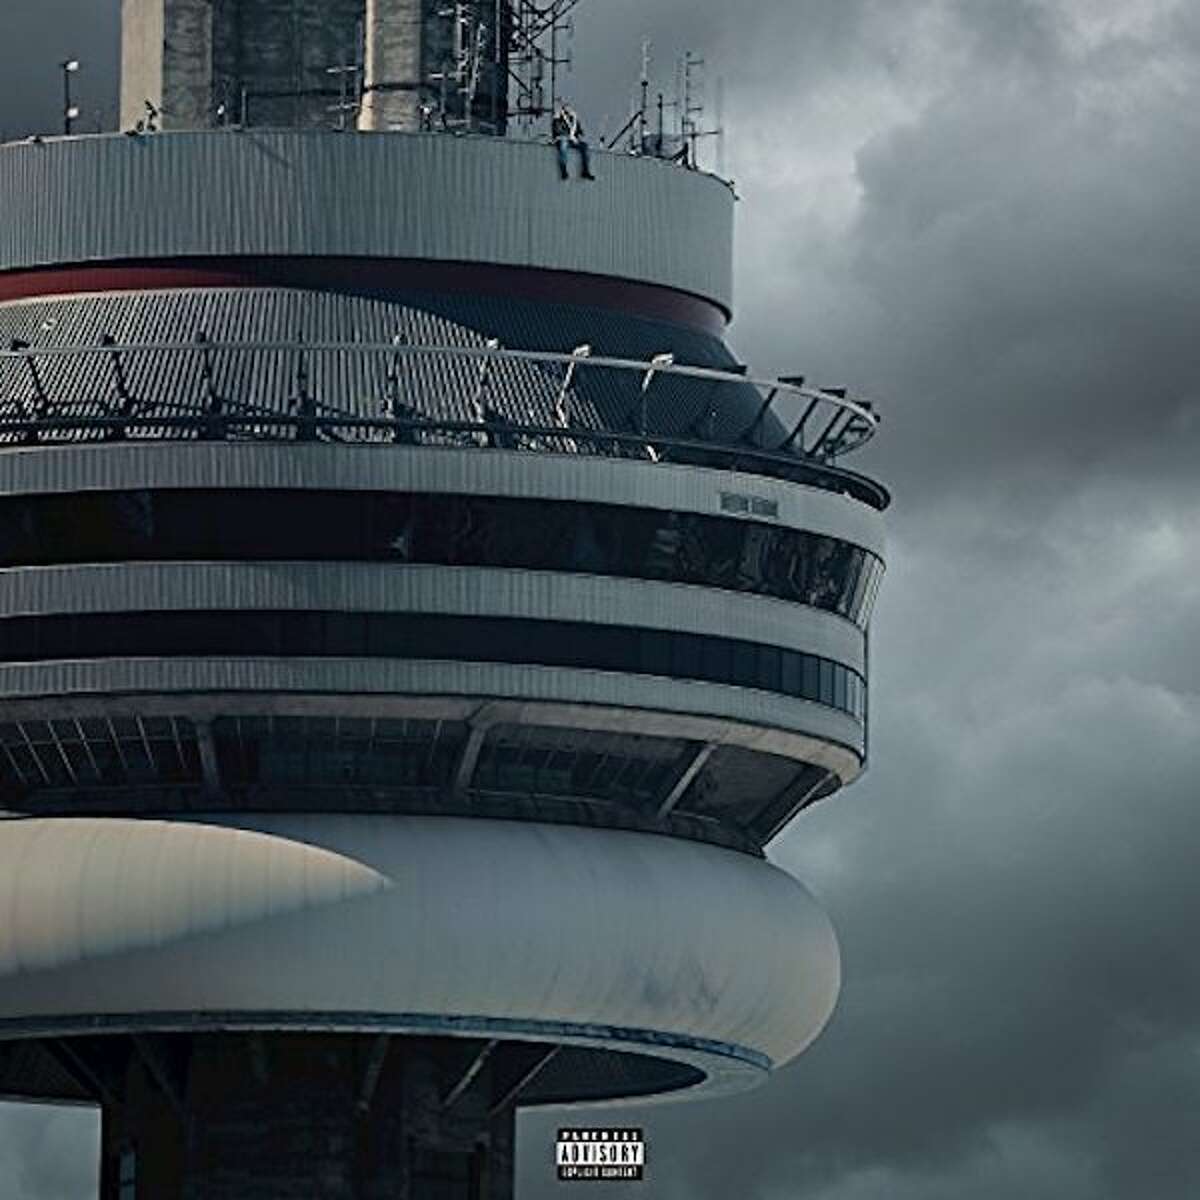 2016: "Views" by Drake